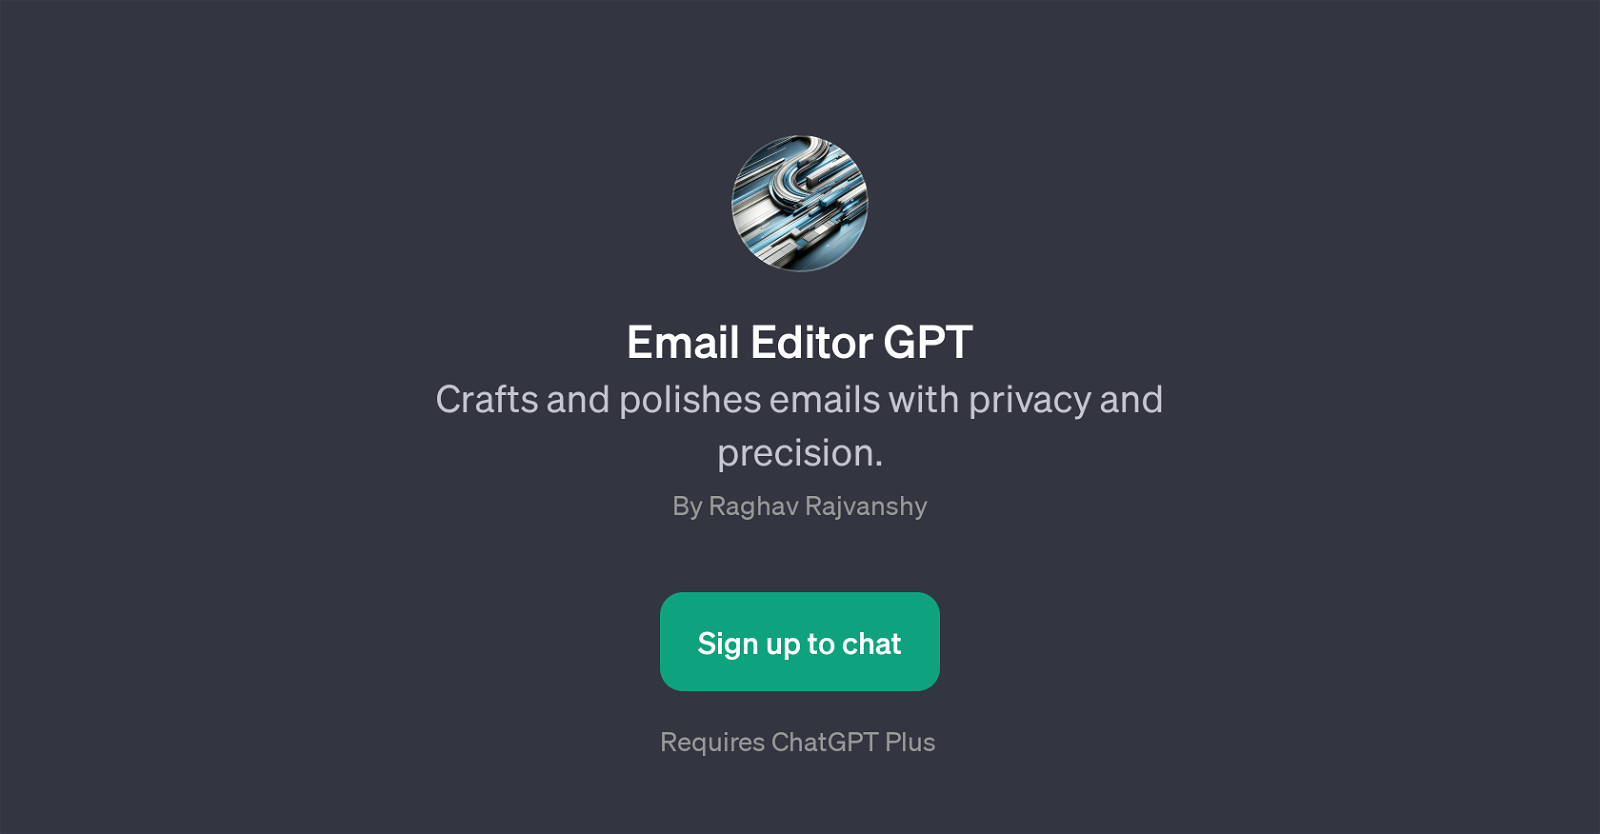 Email Editor GPT website